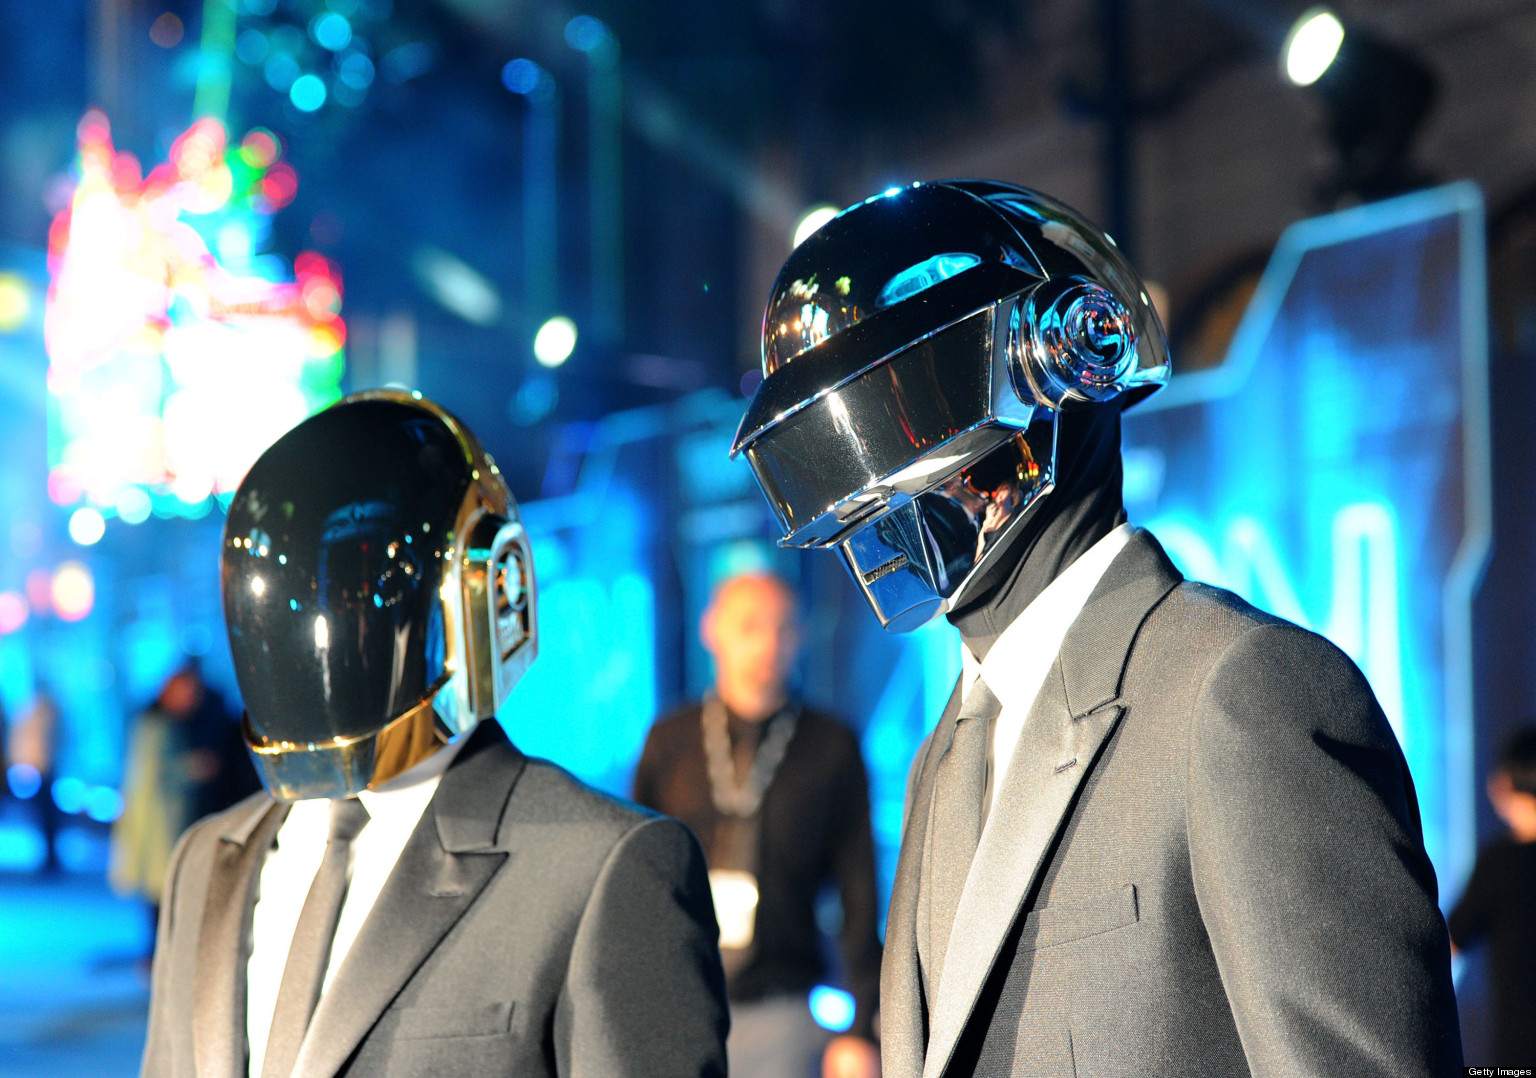 Daft Punk At Coachella? No Way, Says Rep1536 x 1078